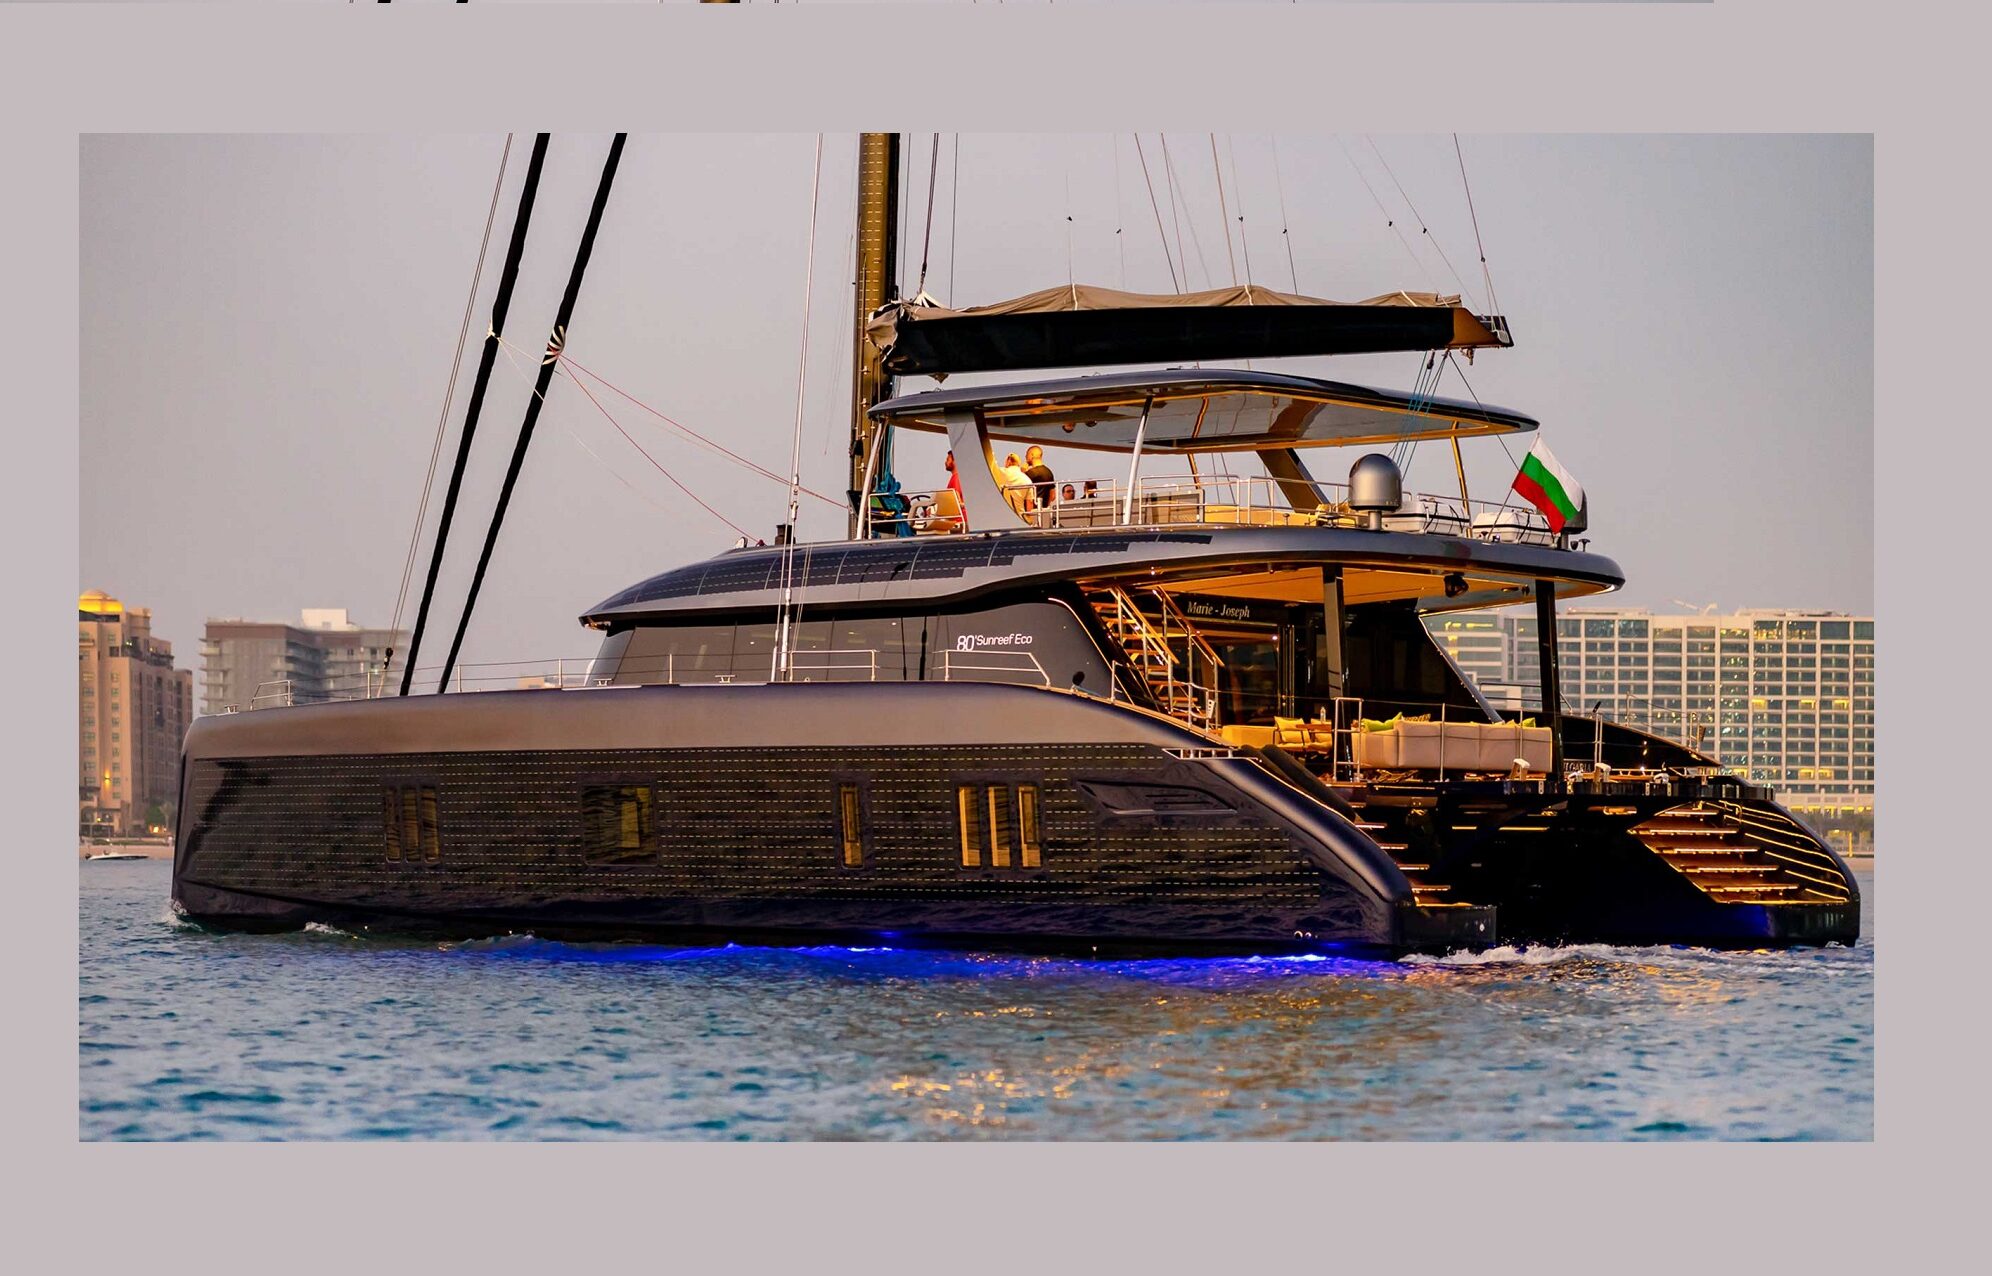 sunreef yachts middle east dubai photos